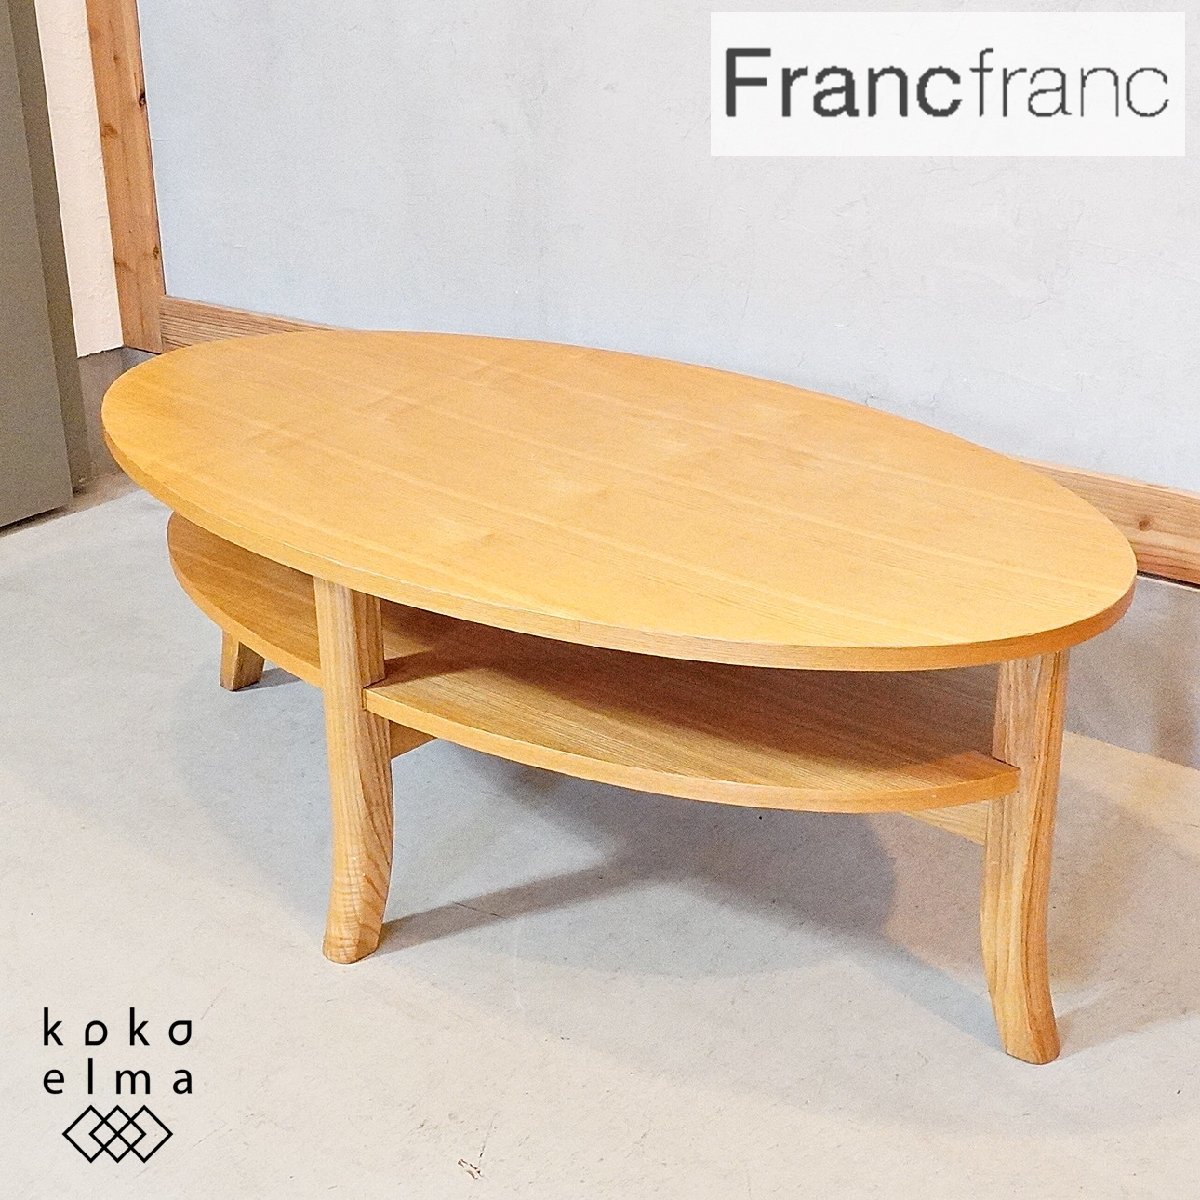 超歓迎された タモ材 オーガ ORGA フランフラン Francfranc コーヒーテーブル DH303 ローテーブル リビングテーブル センターテーブル ウッドトップ Francfranc（フランフラン）